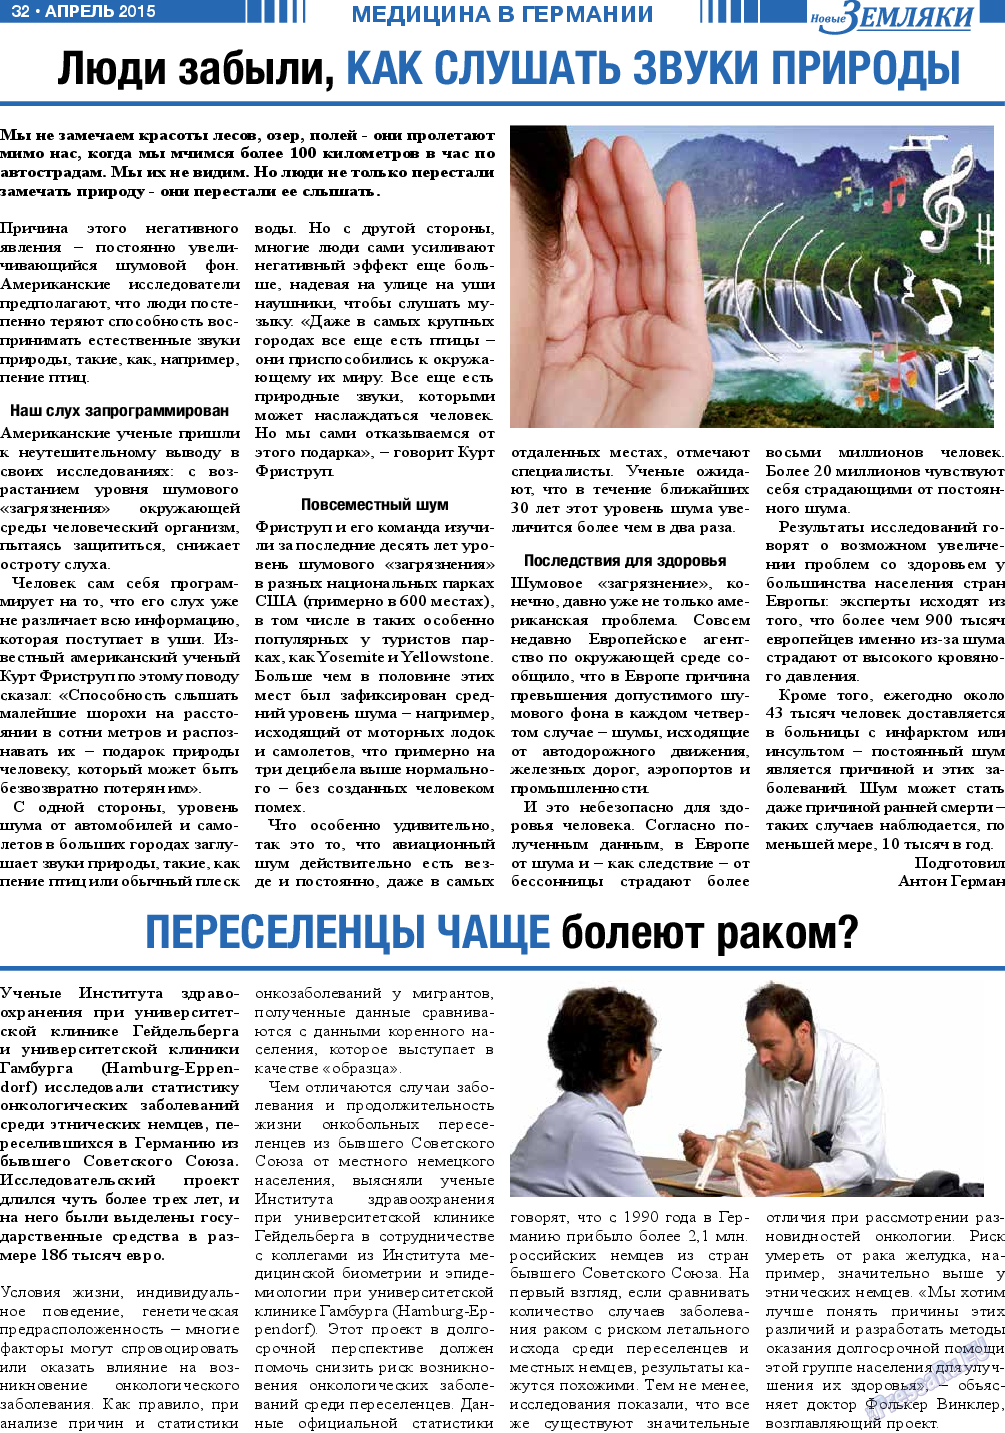 Новые Земляки, газета. 2015 №4 стр.32